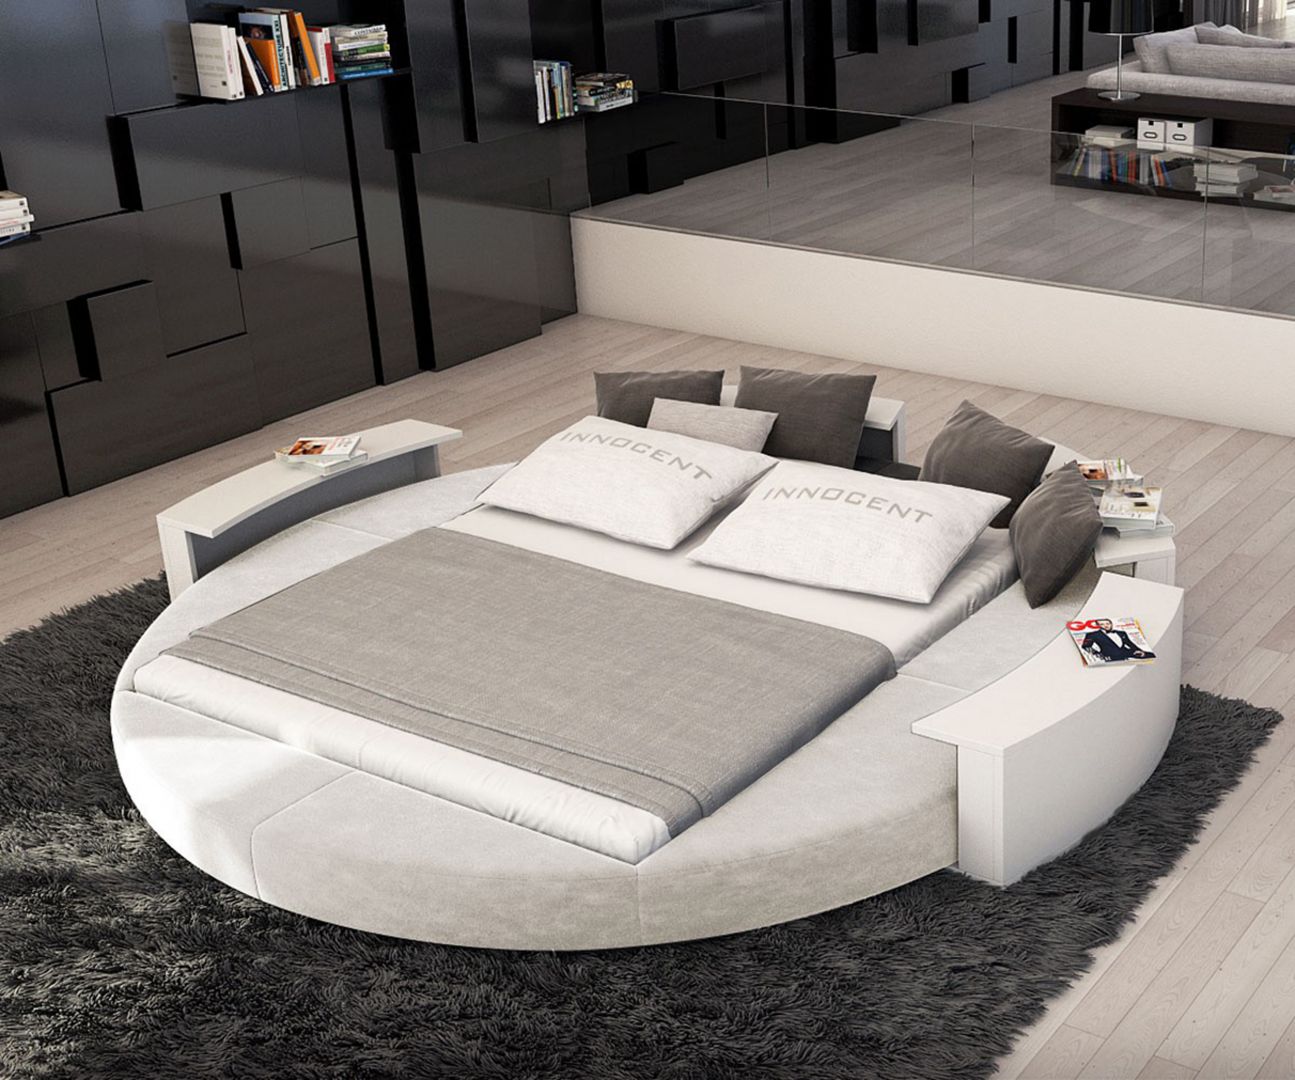 Okrągłe łóżko to najbardziej modernistyczna wersja mebli sypialnianych na współczesnym rynku. Najlepiej sprawdza się w dużych, przestronnych sypialniach. Na zdjęciu model Rundbett Ailina. Fot. Delife 